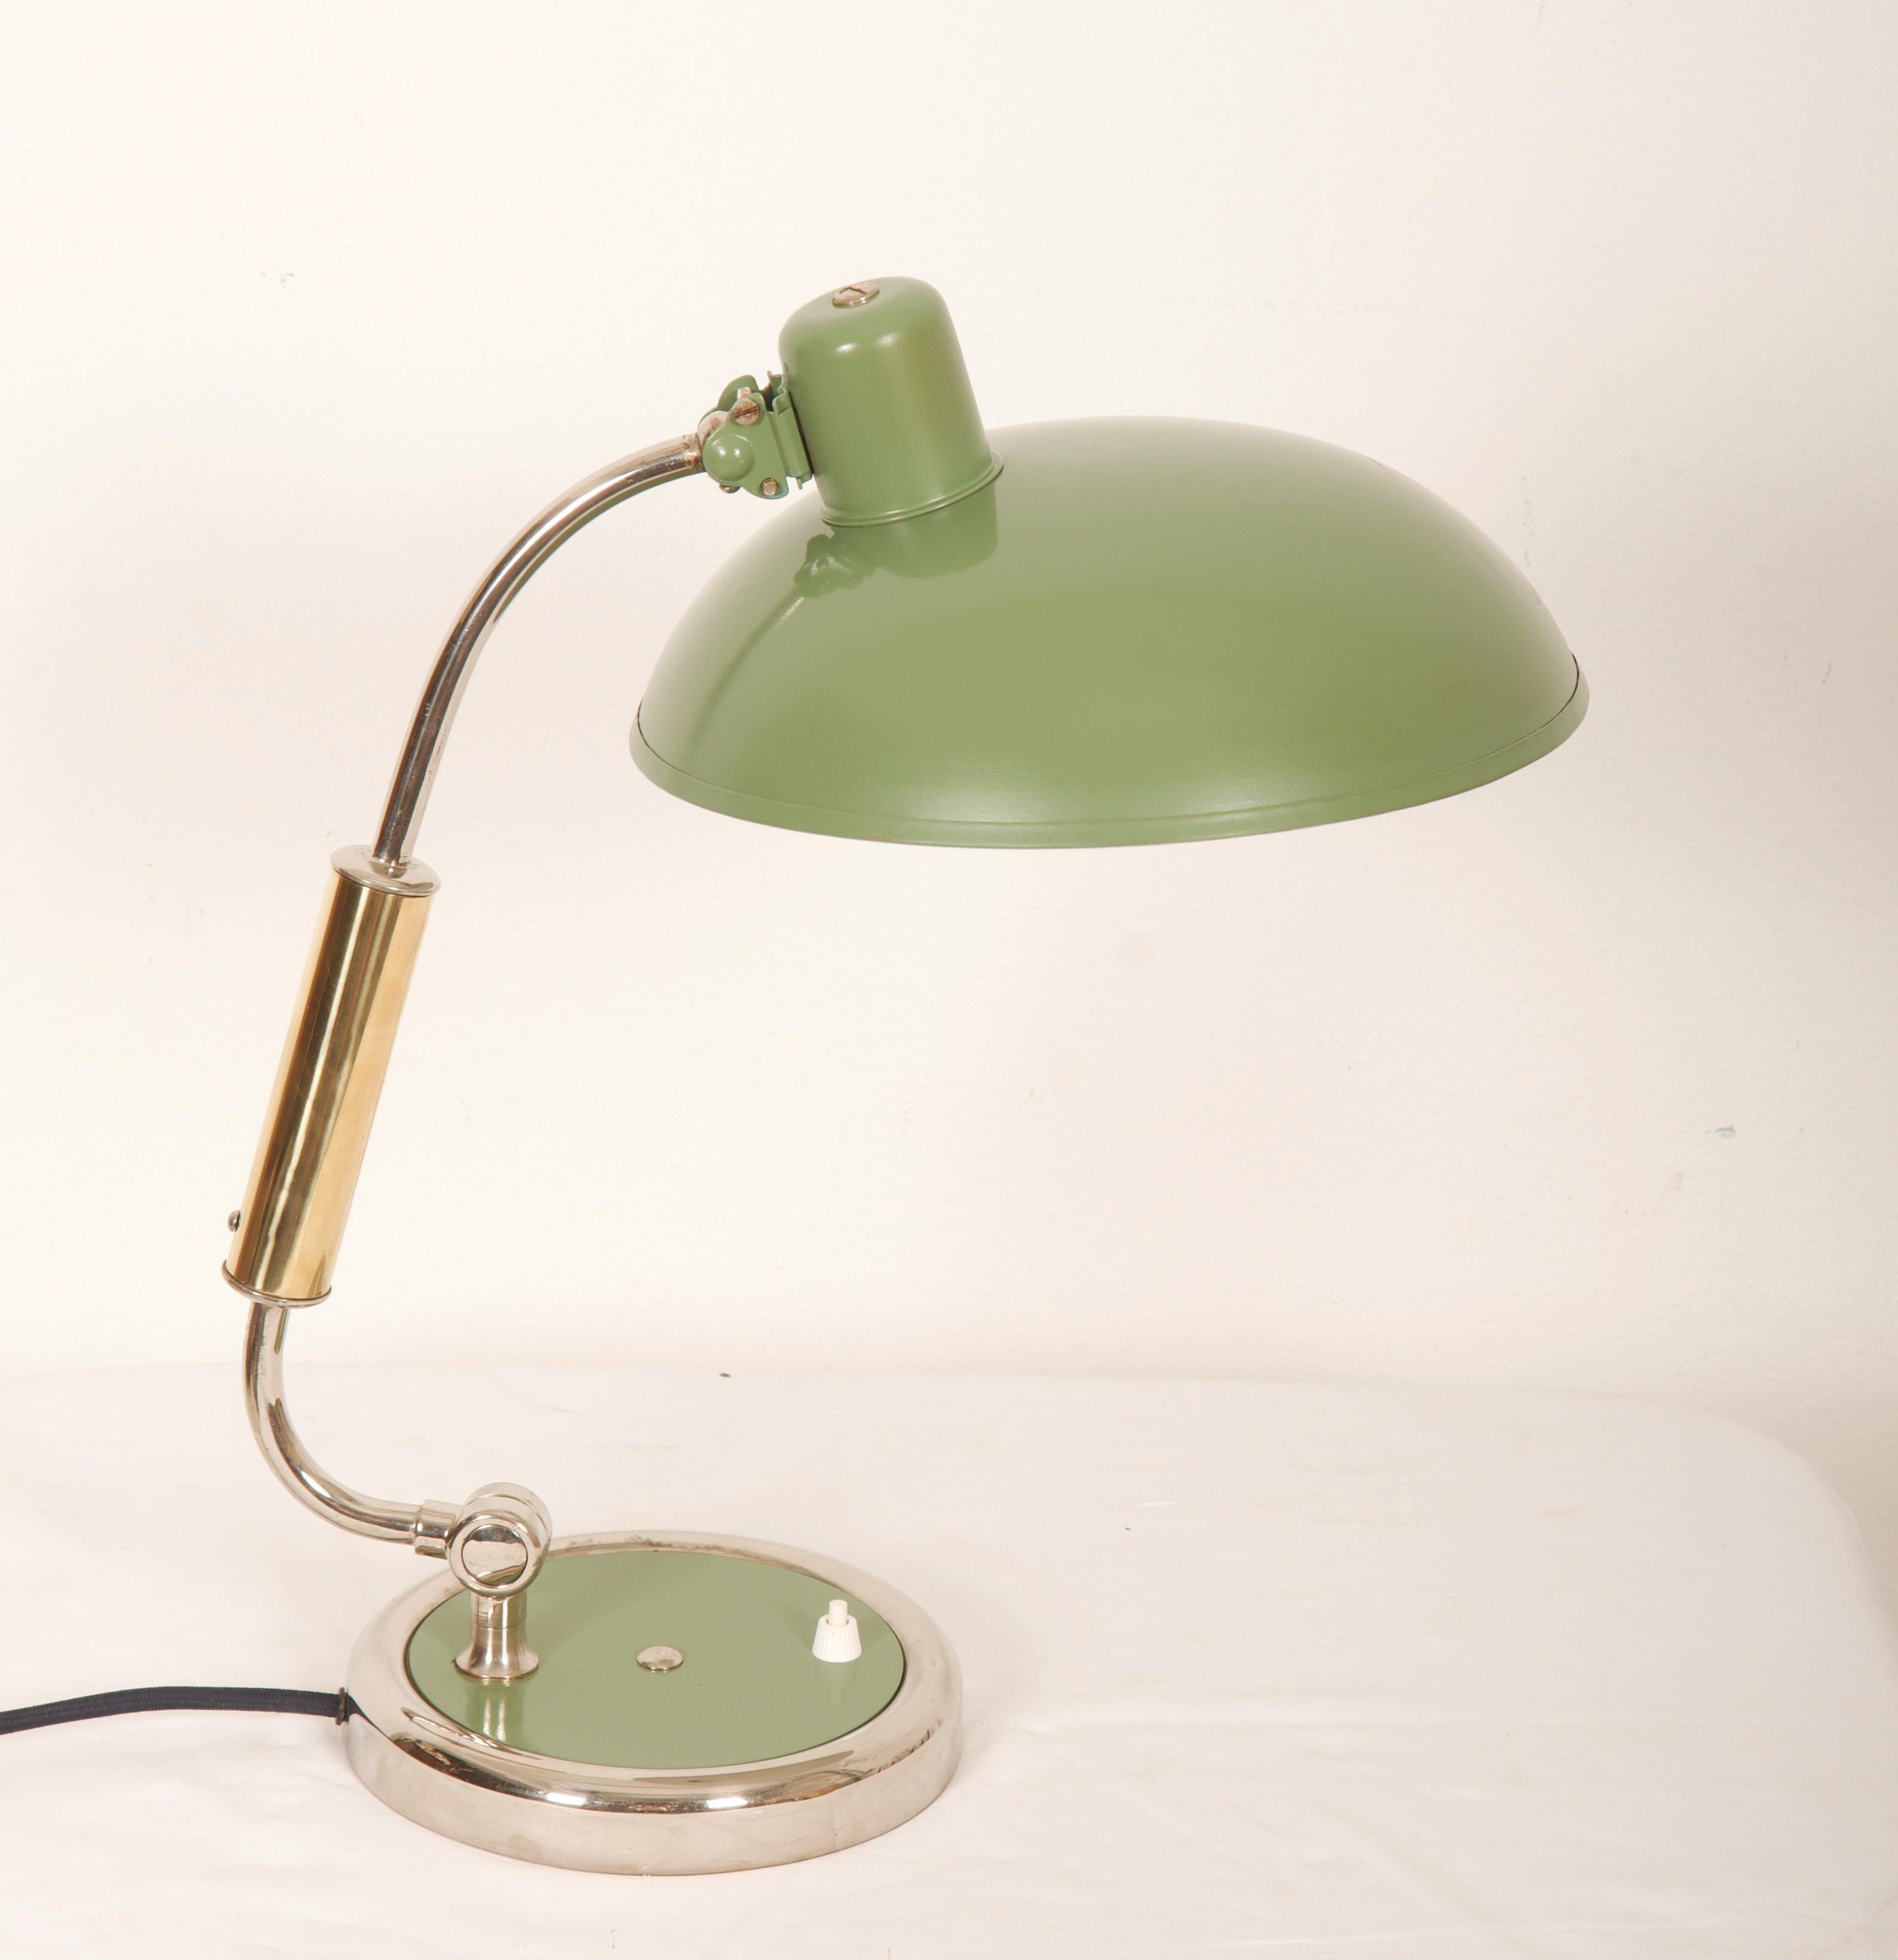 Bauhaus Tischlampe grün lackiert aus den 1930er Jahren Modell 6632. Die Lampe ist neu lackiert.